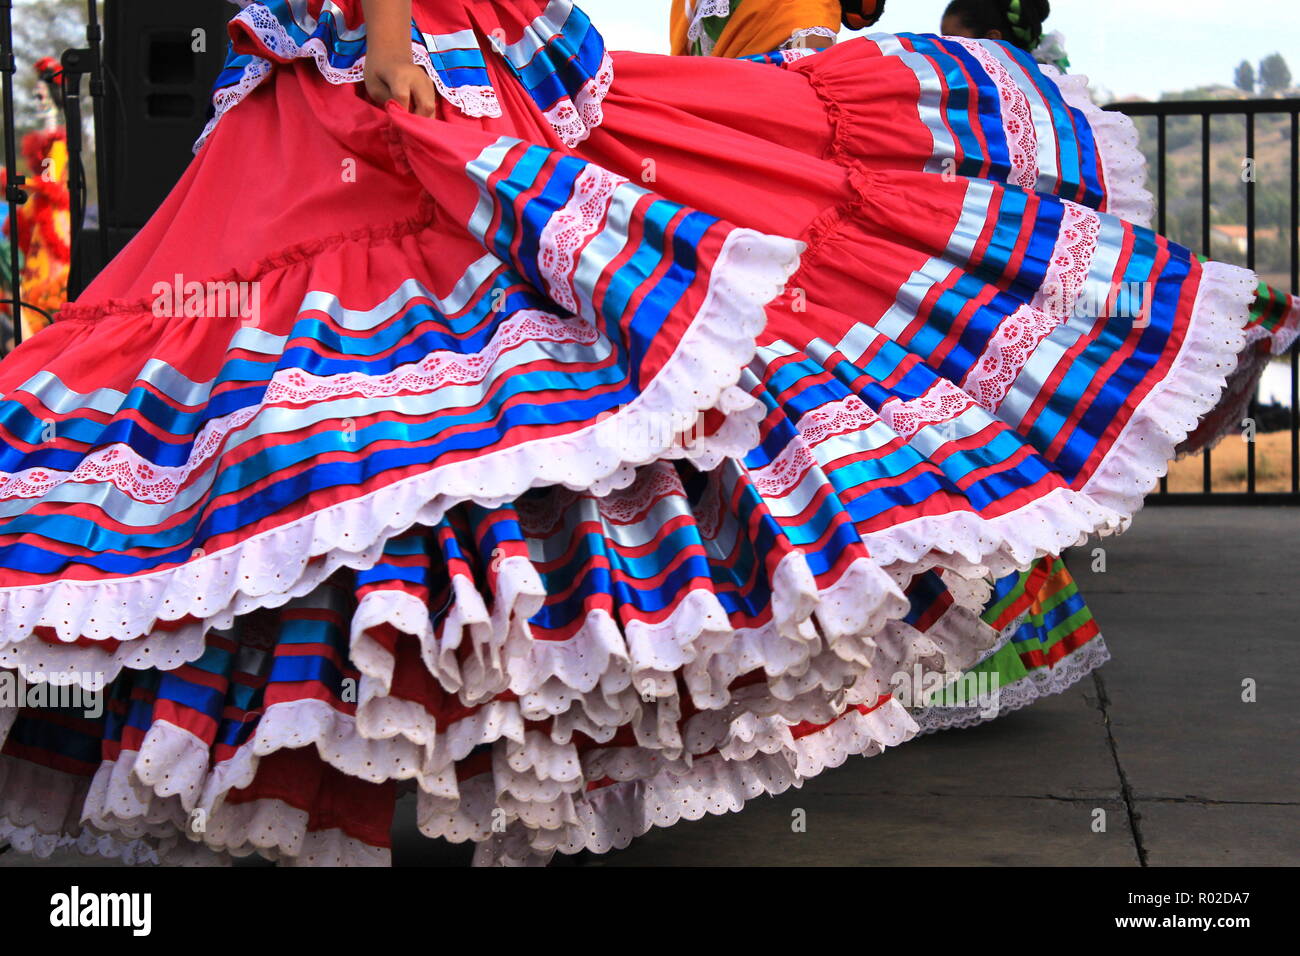 Jupes colorés voler au cours de danse traditionnelle mexicaine Photo Stock  - Alamy